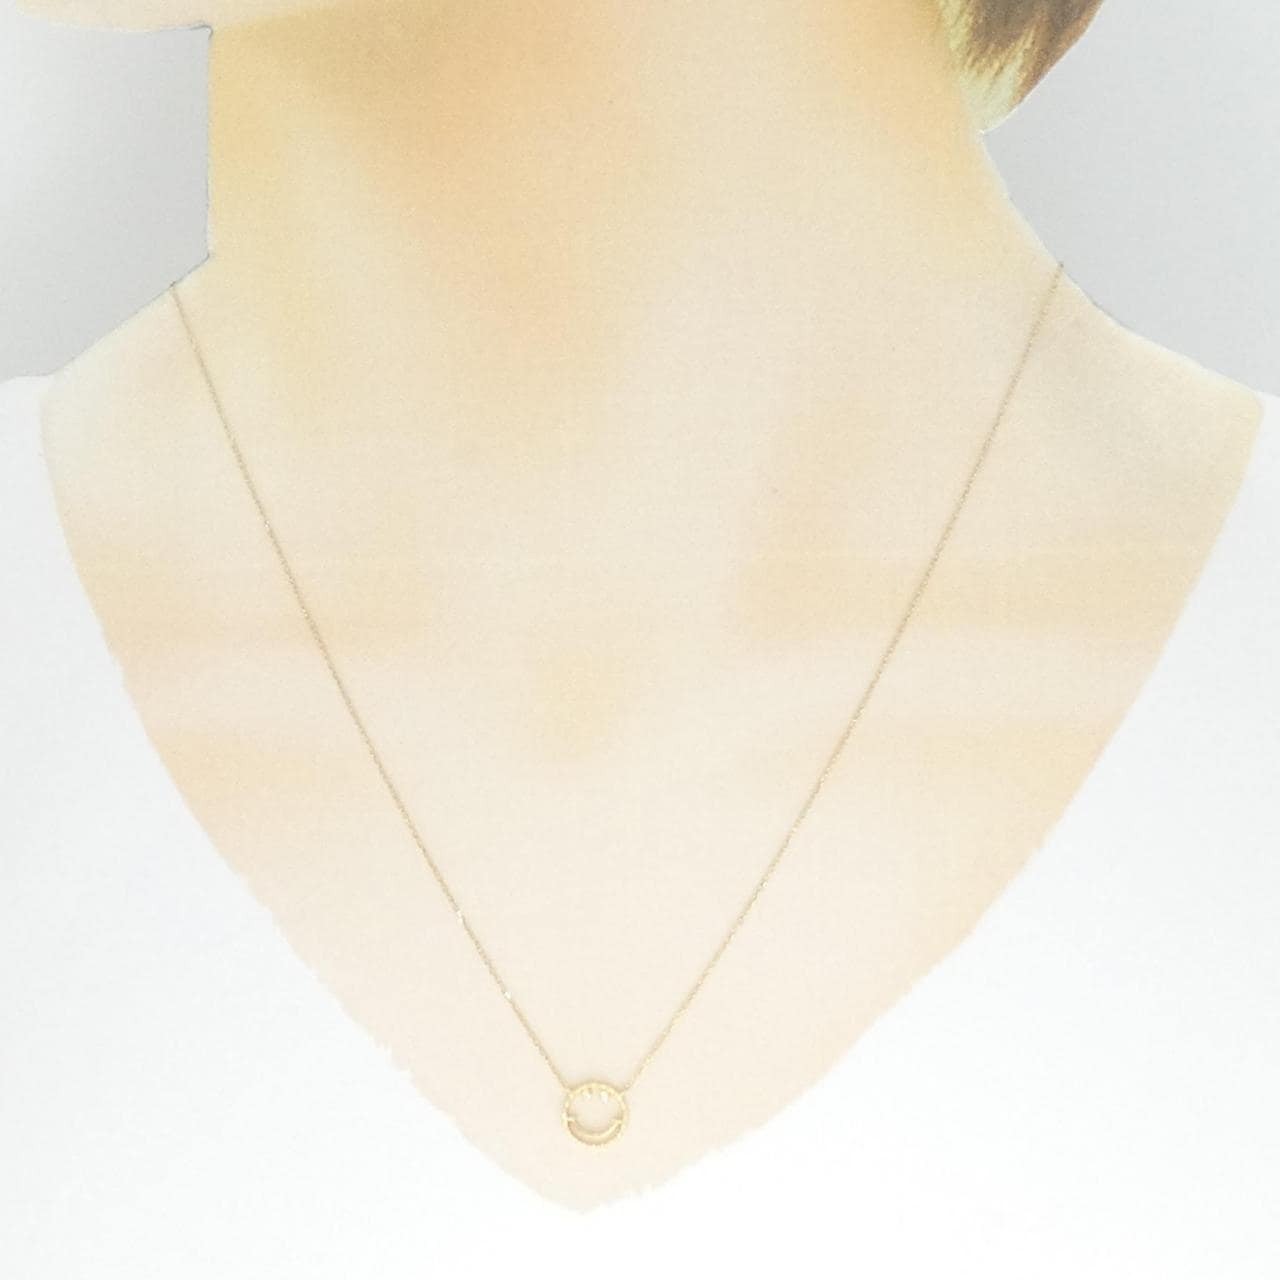 STAR JEWELRY Diamond necklace 0.09CT